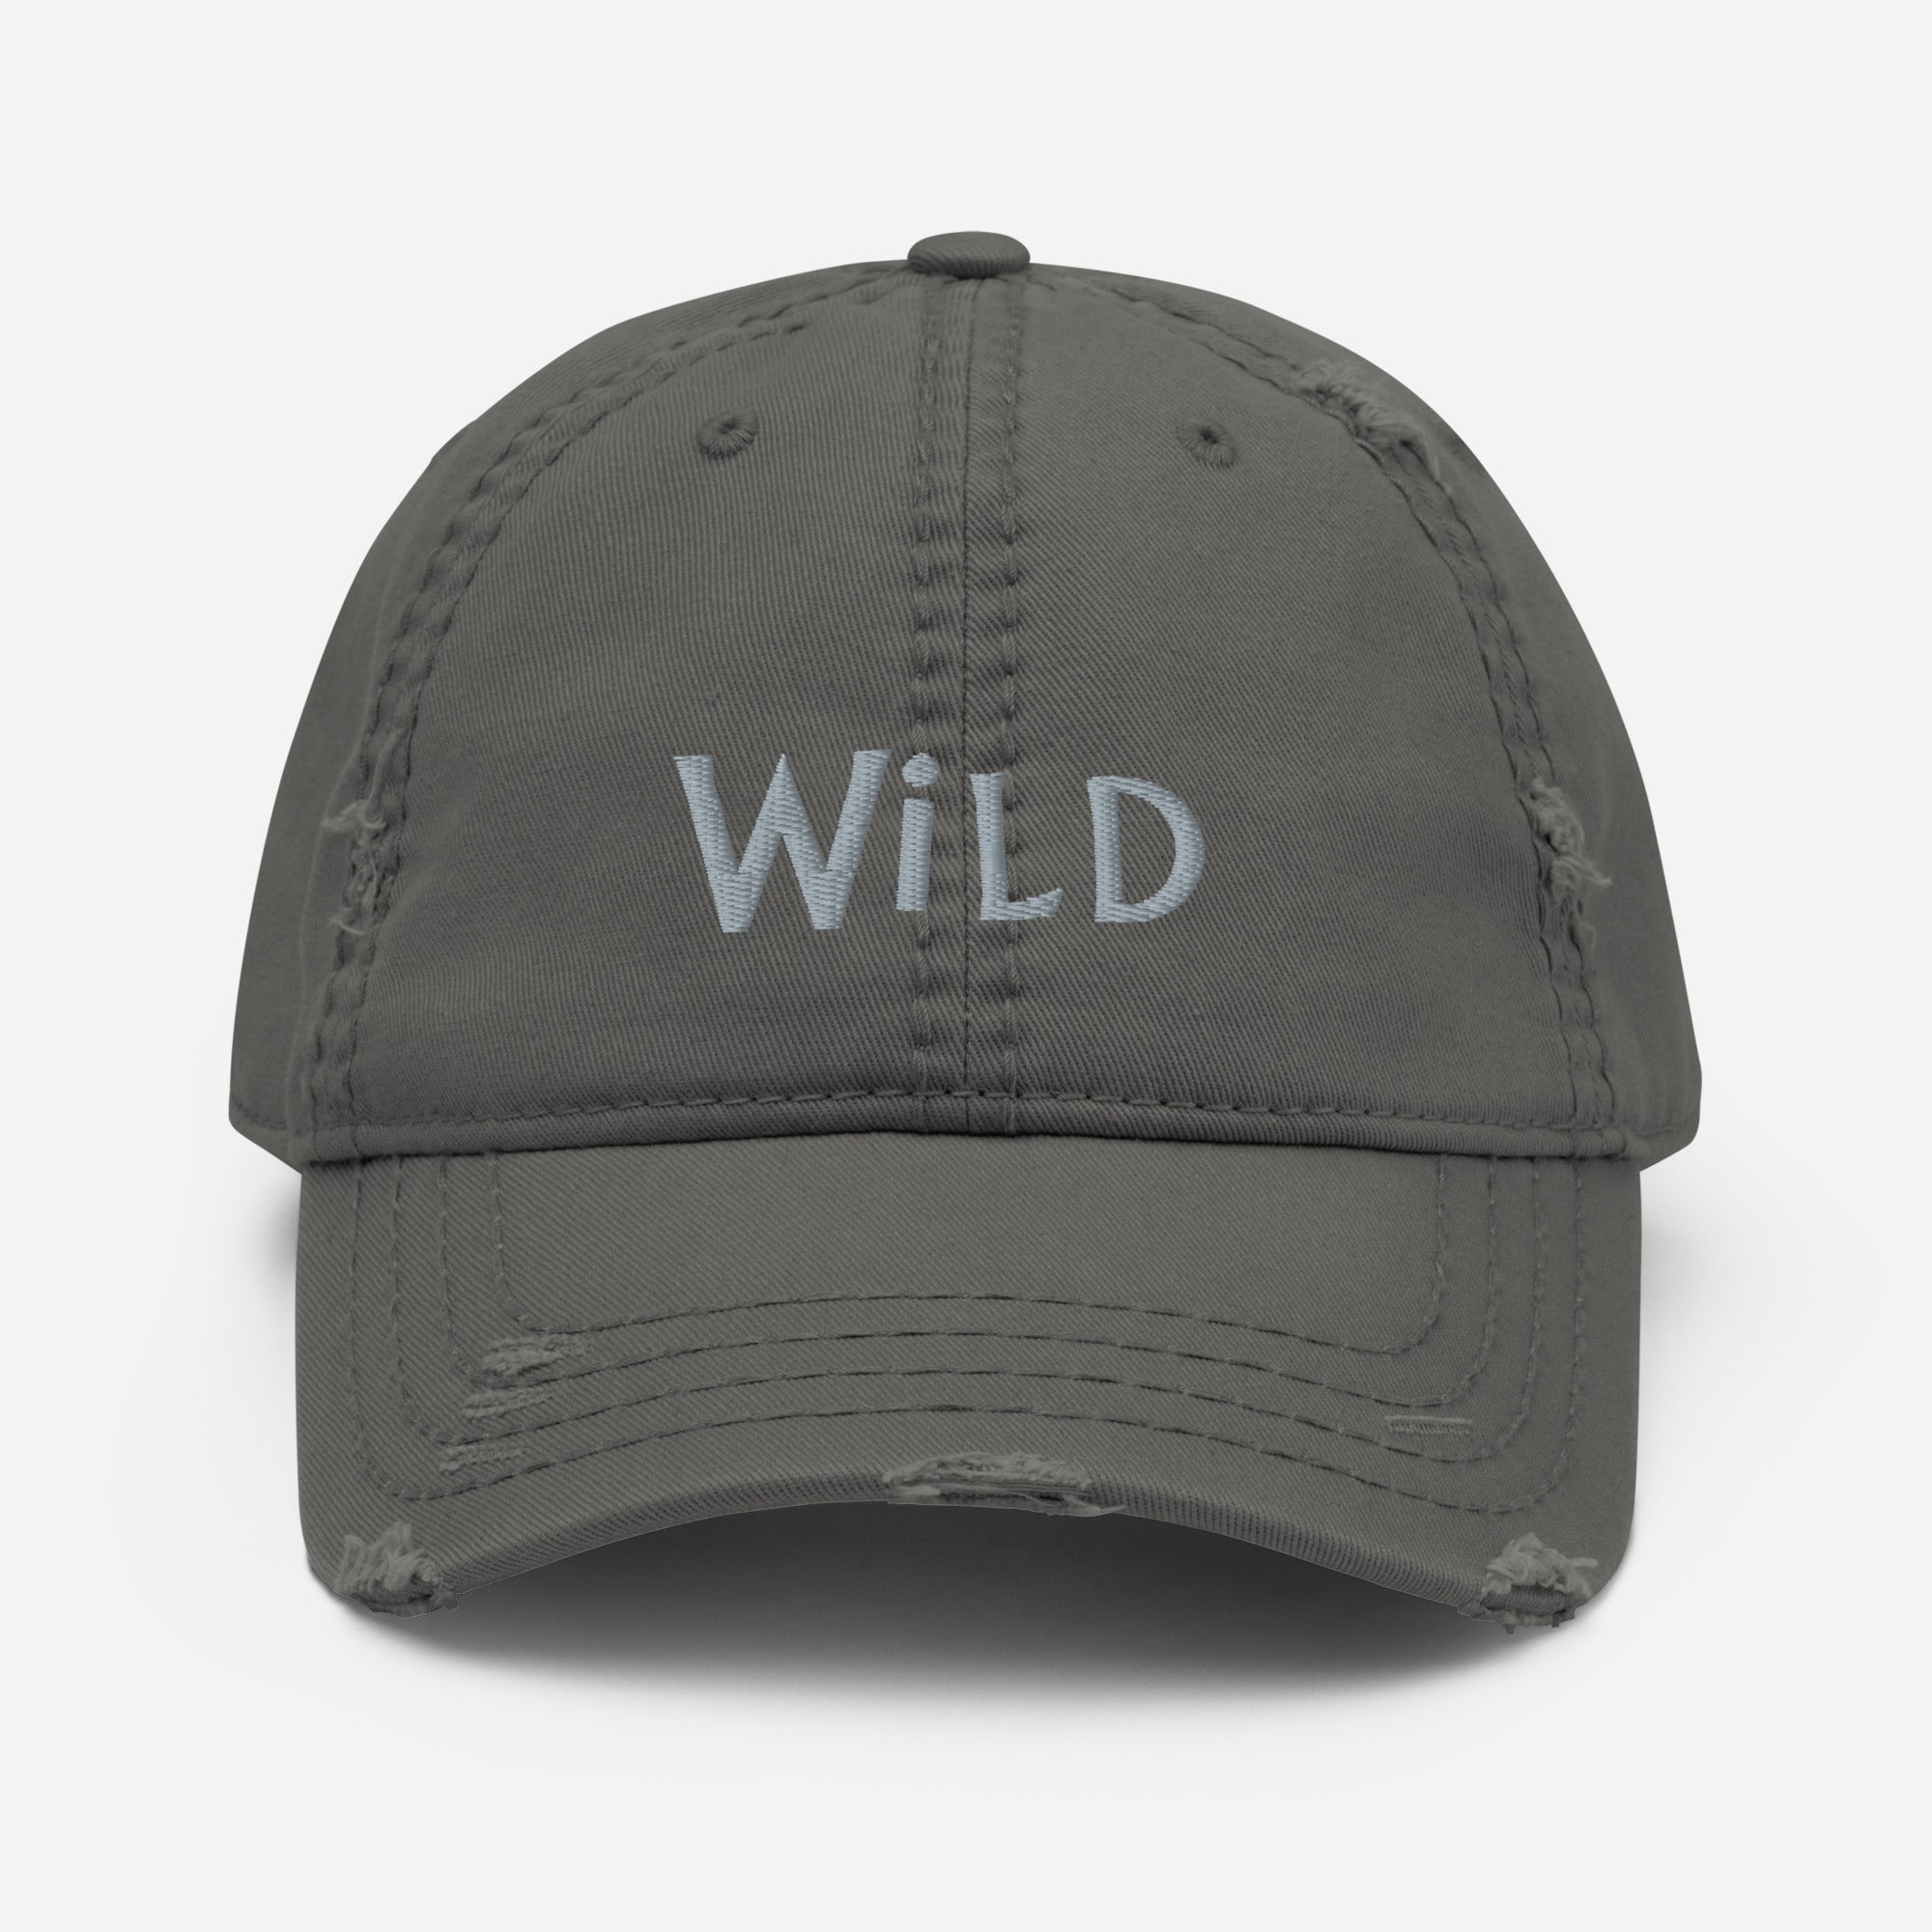 Wild-Distressed Dad Hat